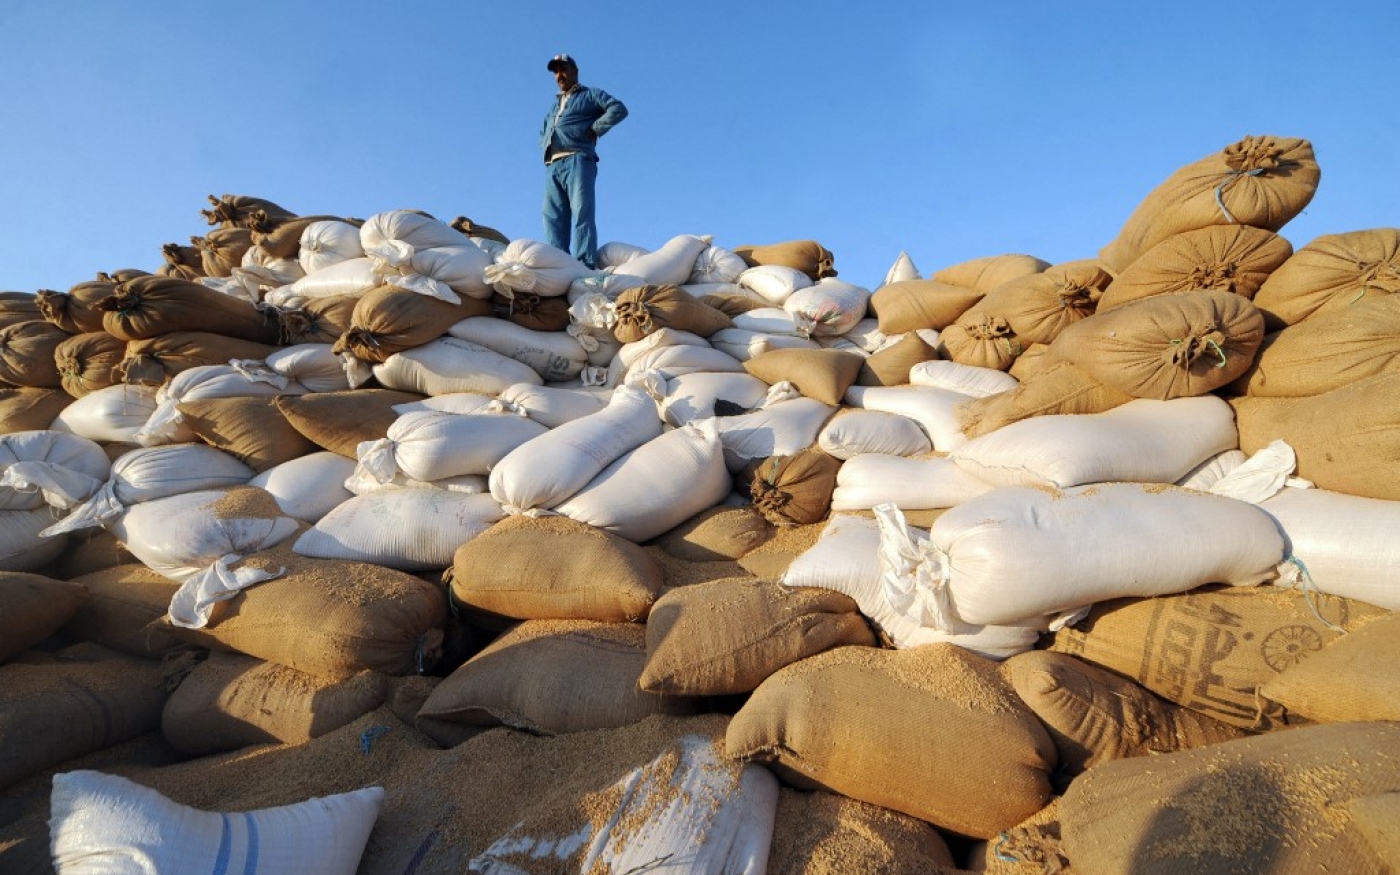 Des agriculteurs tunisiens ramassent des sacs de blé dans le gouvernorat de l’Ariana au nord de la Tunisie. Le pays produit moins de la moitié de ses besoins nationaux (AFP/Fethi Belaïd)